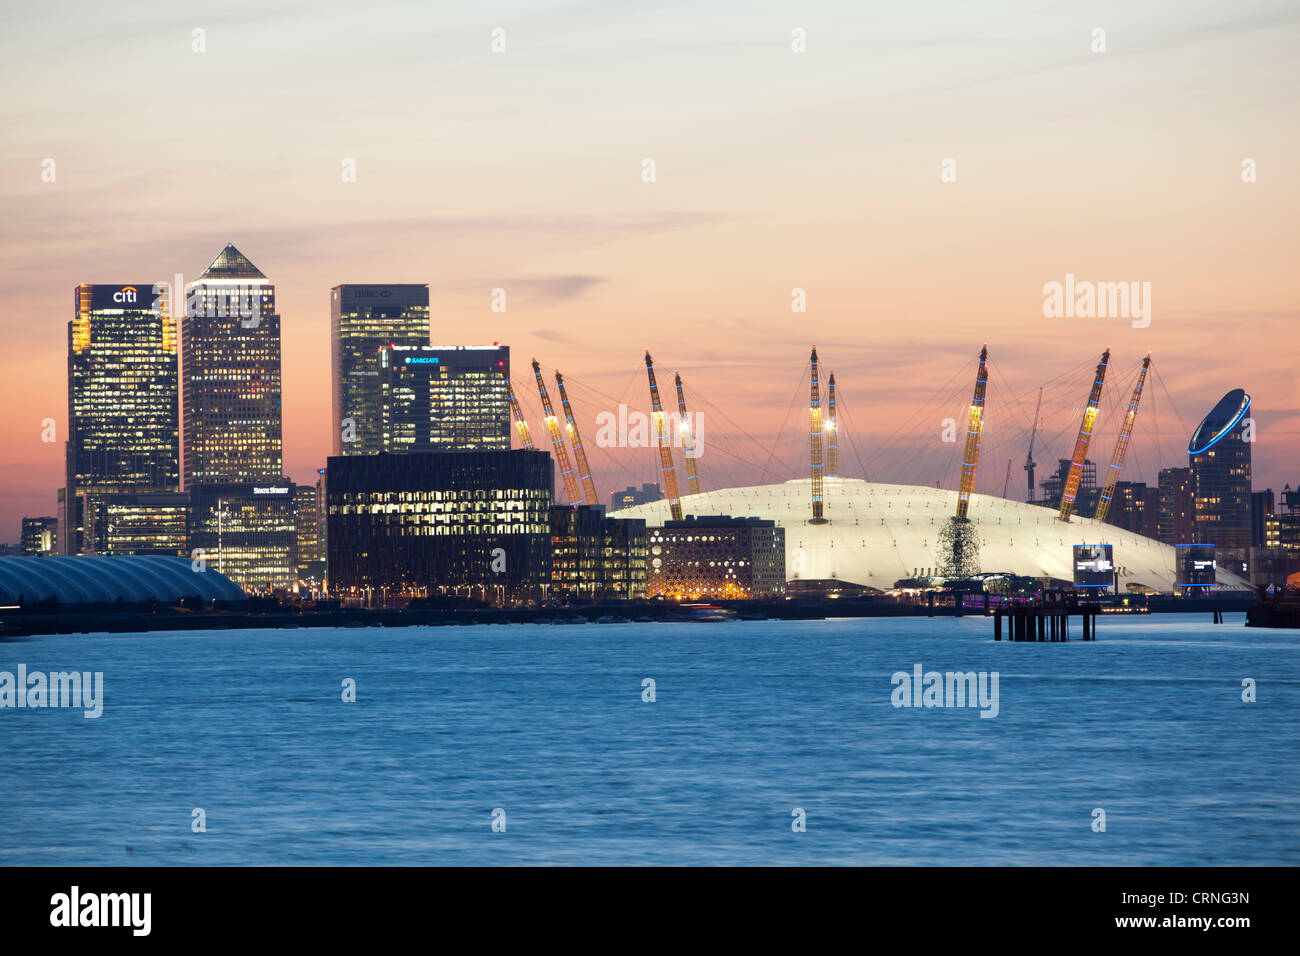 Une vue sur la Tamise vers l'O2 Arena et Canary Wharf au coucher du soleil. Banque D'Images